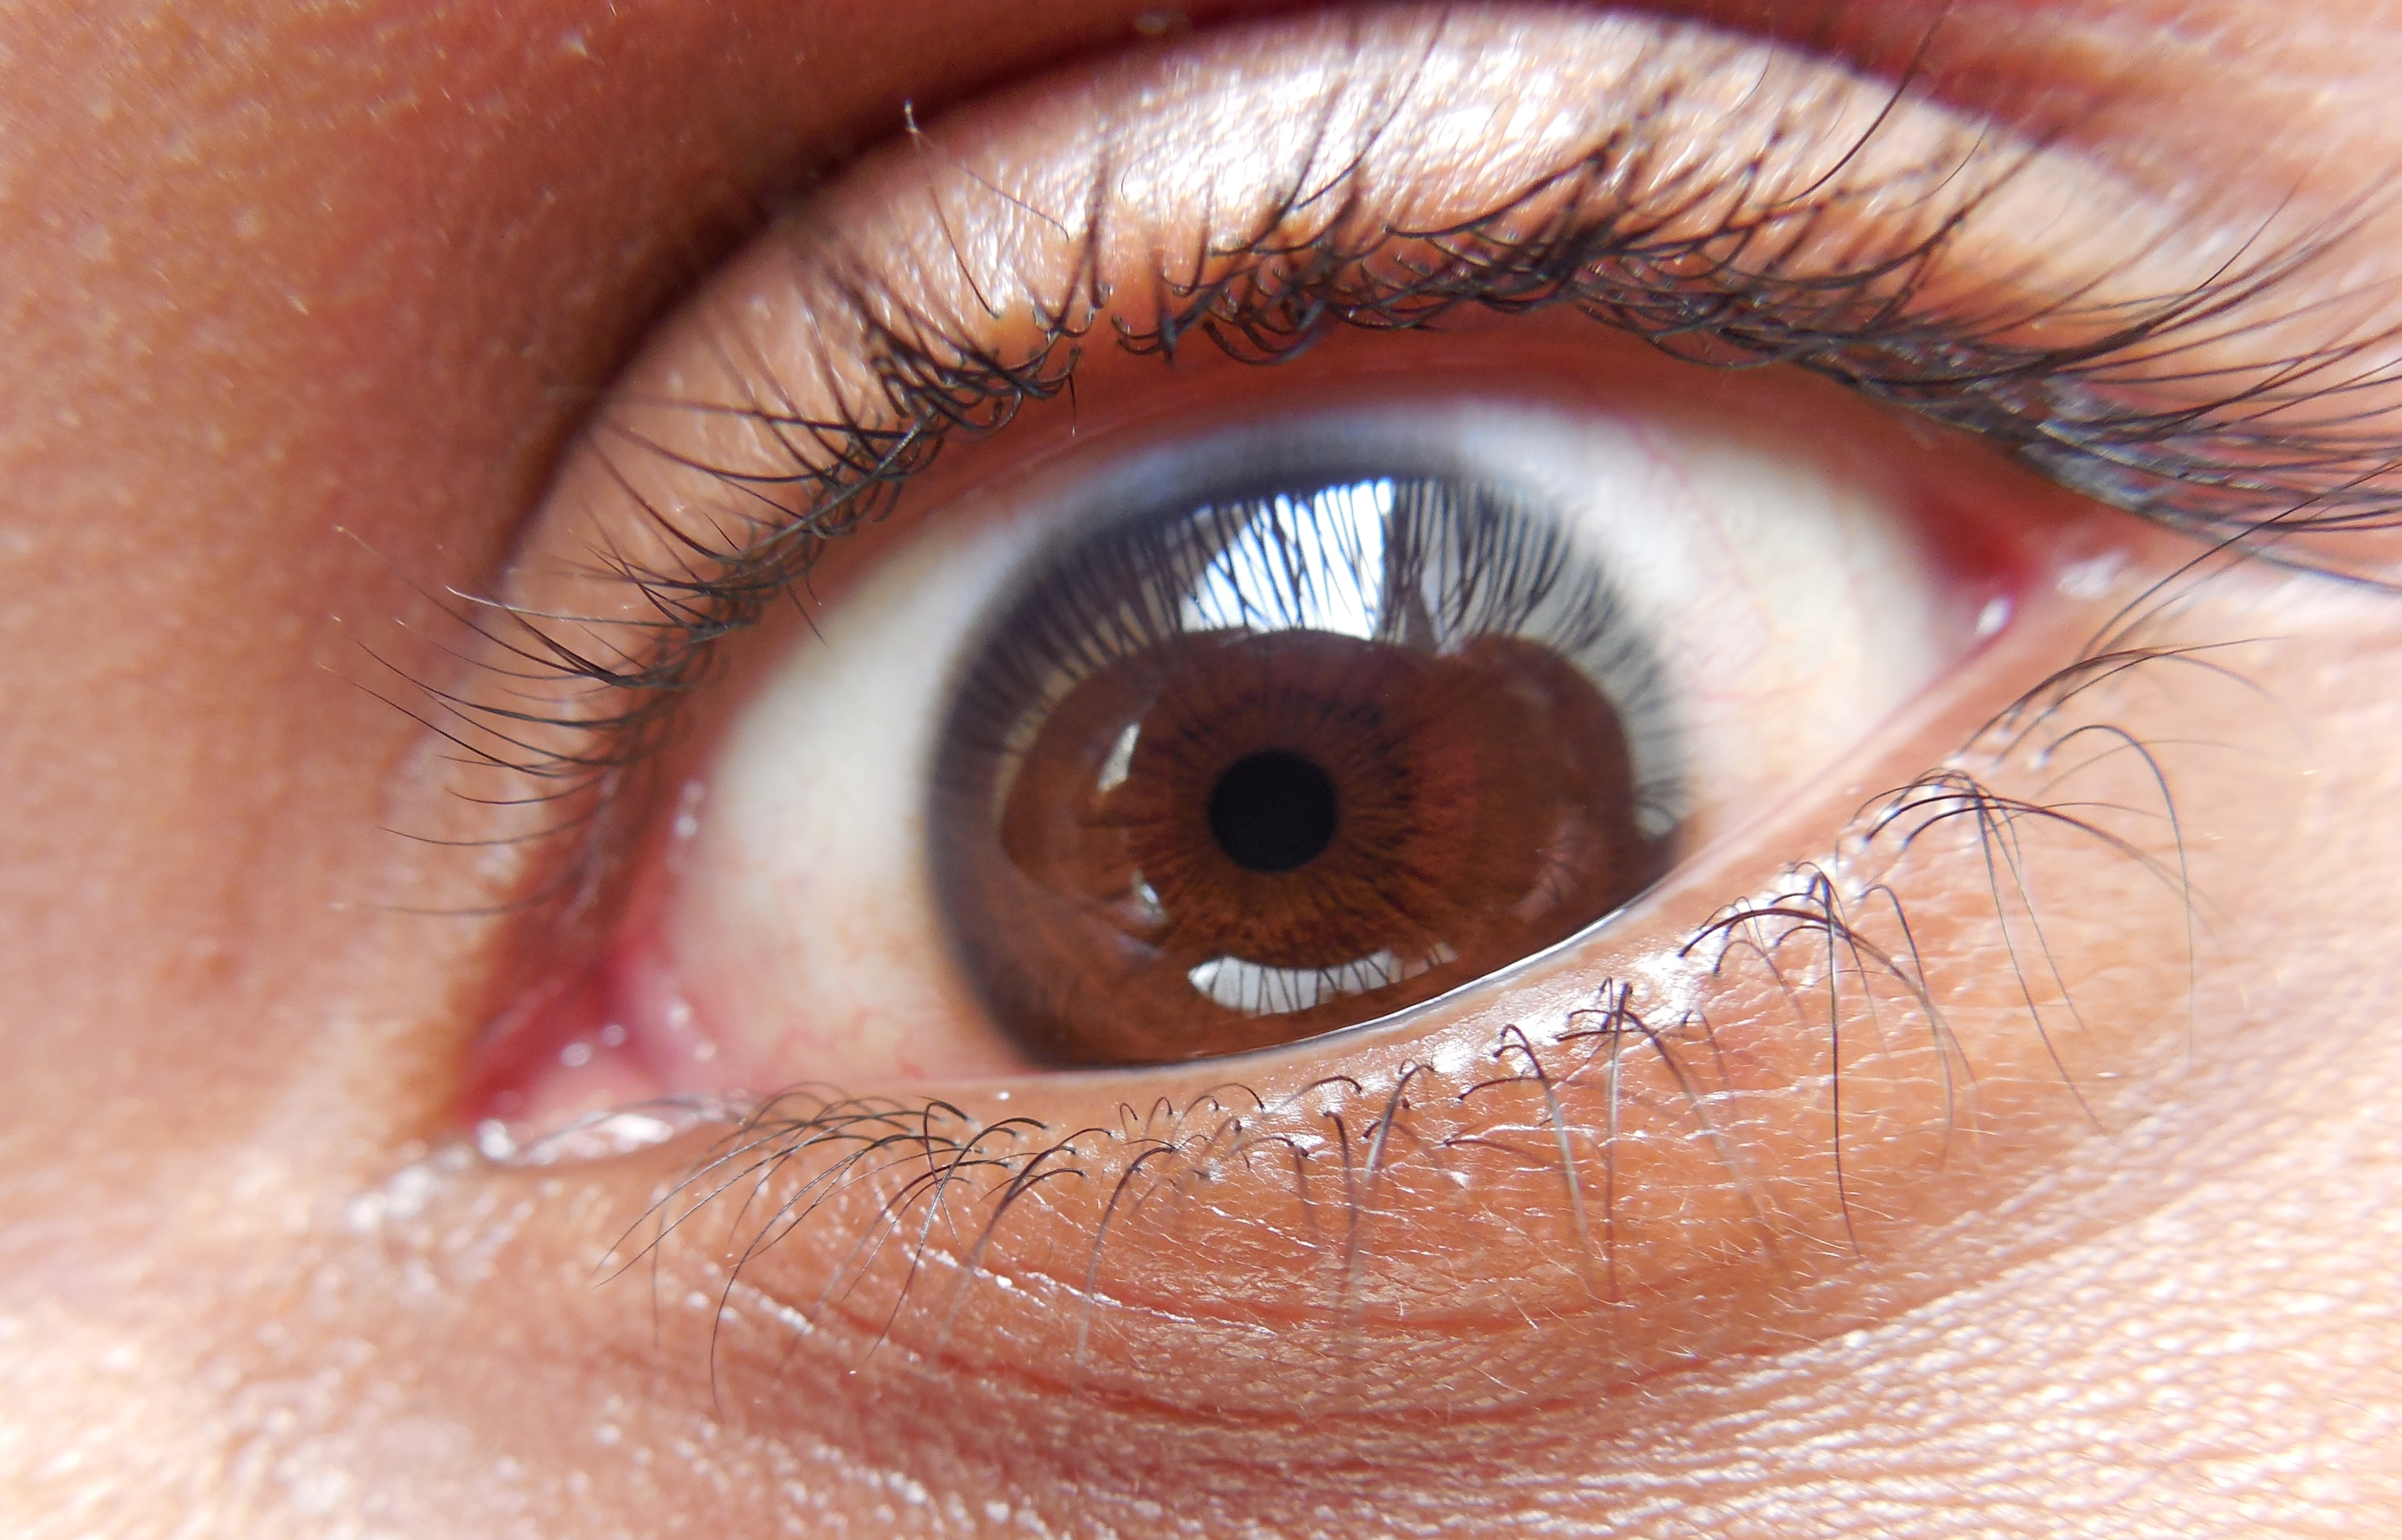 File:The human eye.JPG - Wikimedia Commons